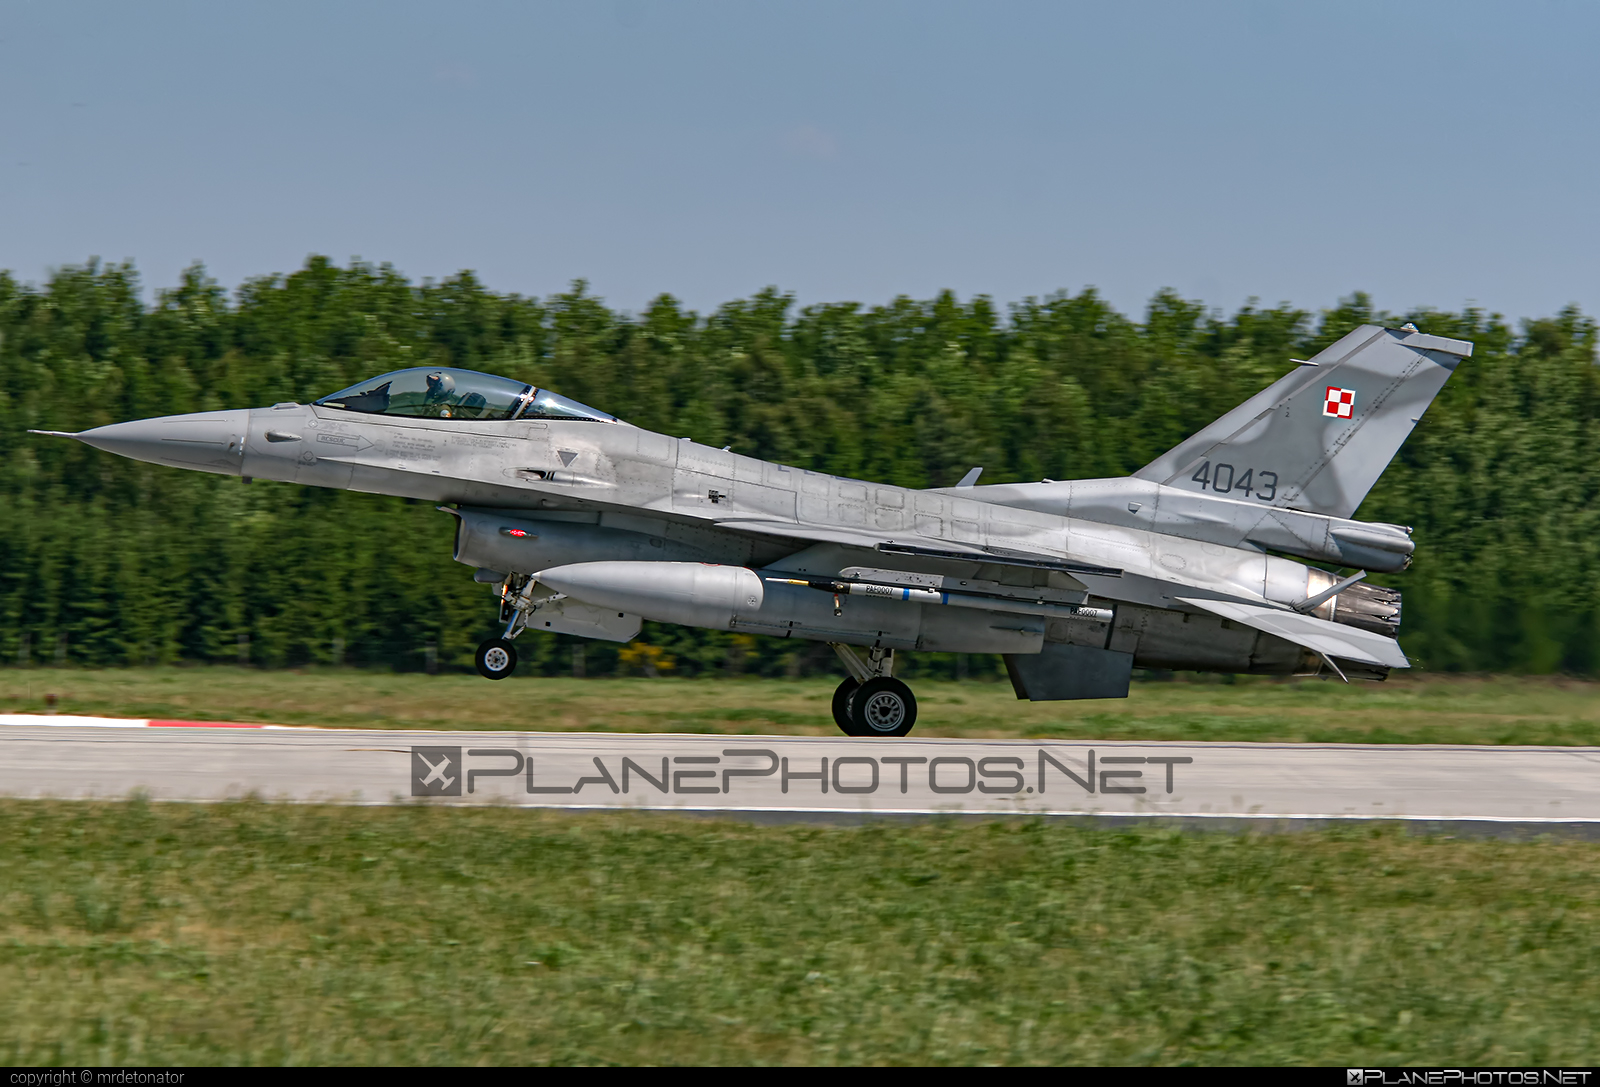 Lockheed Martin F-16C Fighting Falcon - 4043 operated by Siły Powietrzne Rzeczypospolitej Polskiej (Polish Air Force) #f16 #f16c #fightingfalcon #lockheedMartin #polishairforce #silypowietrzne